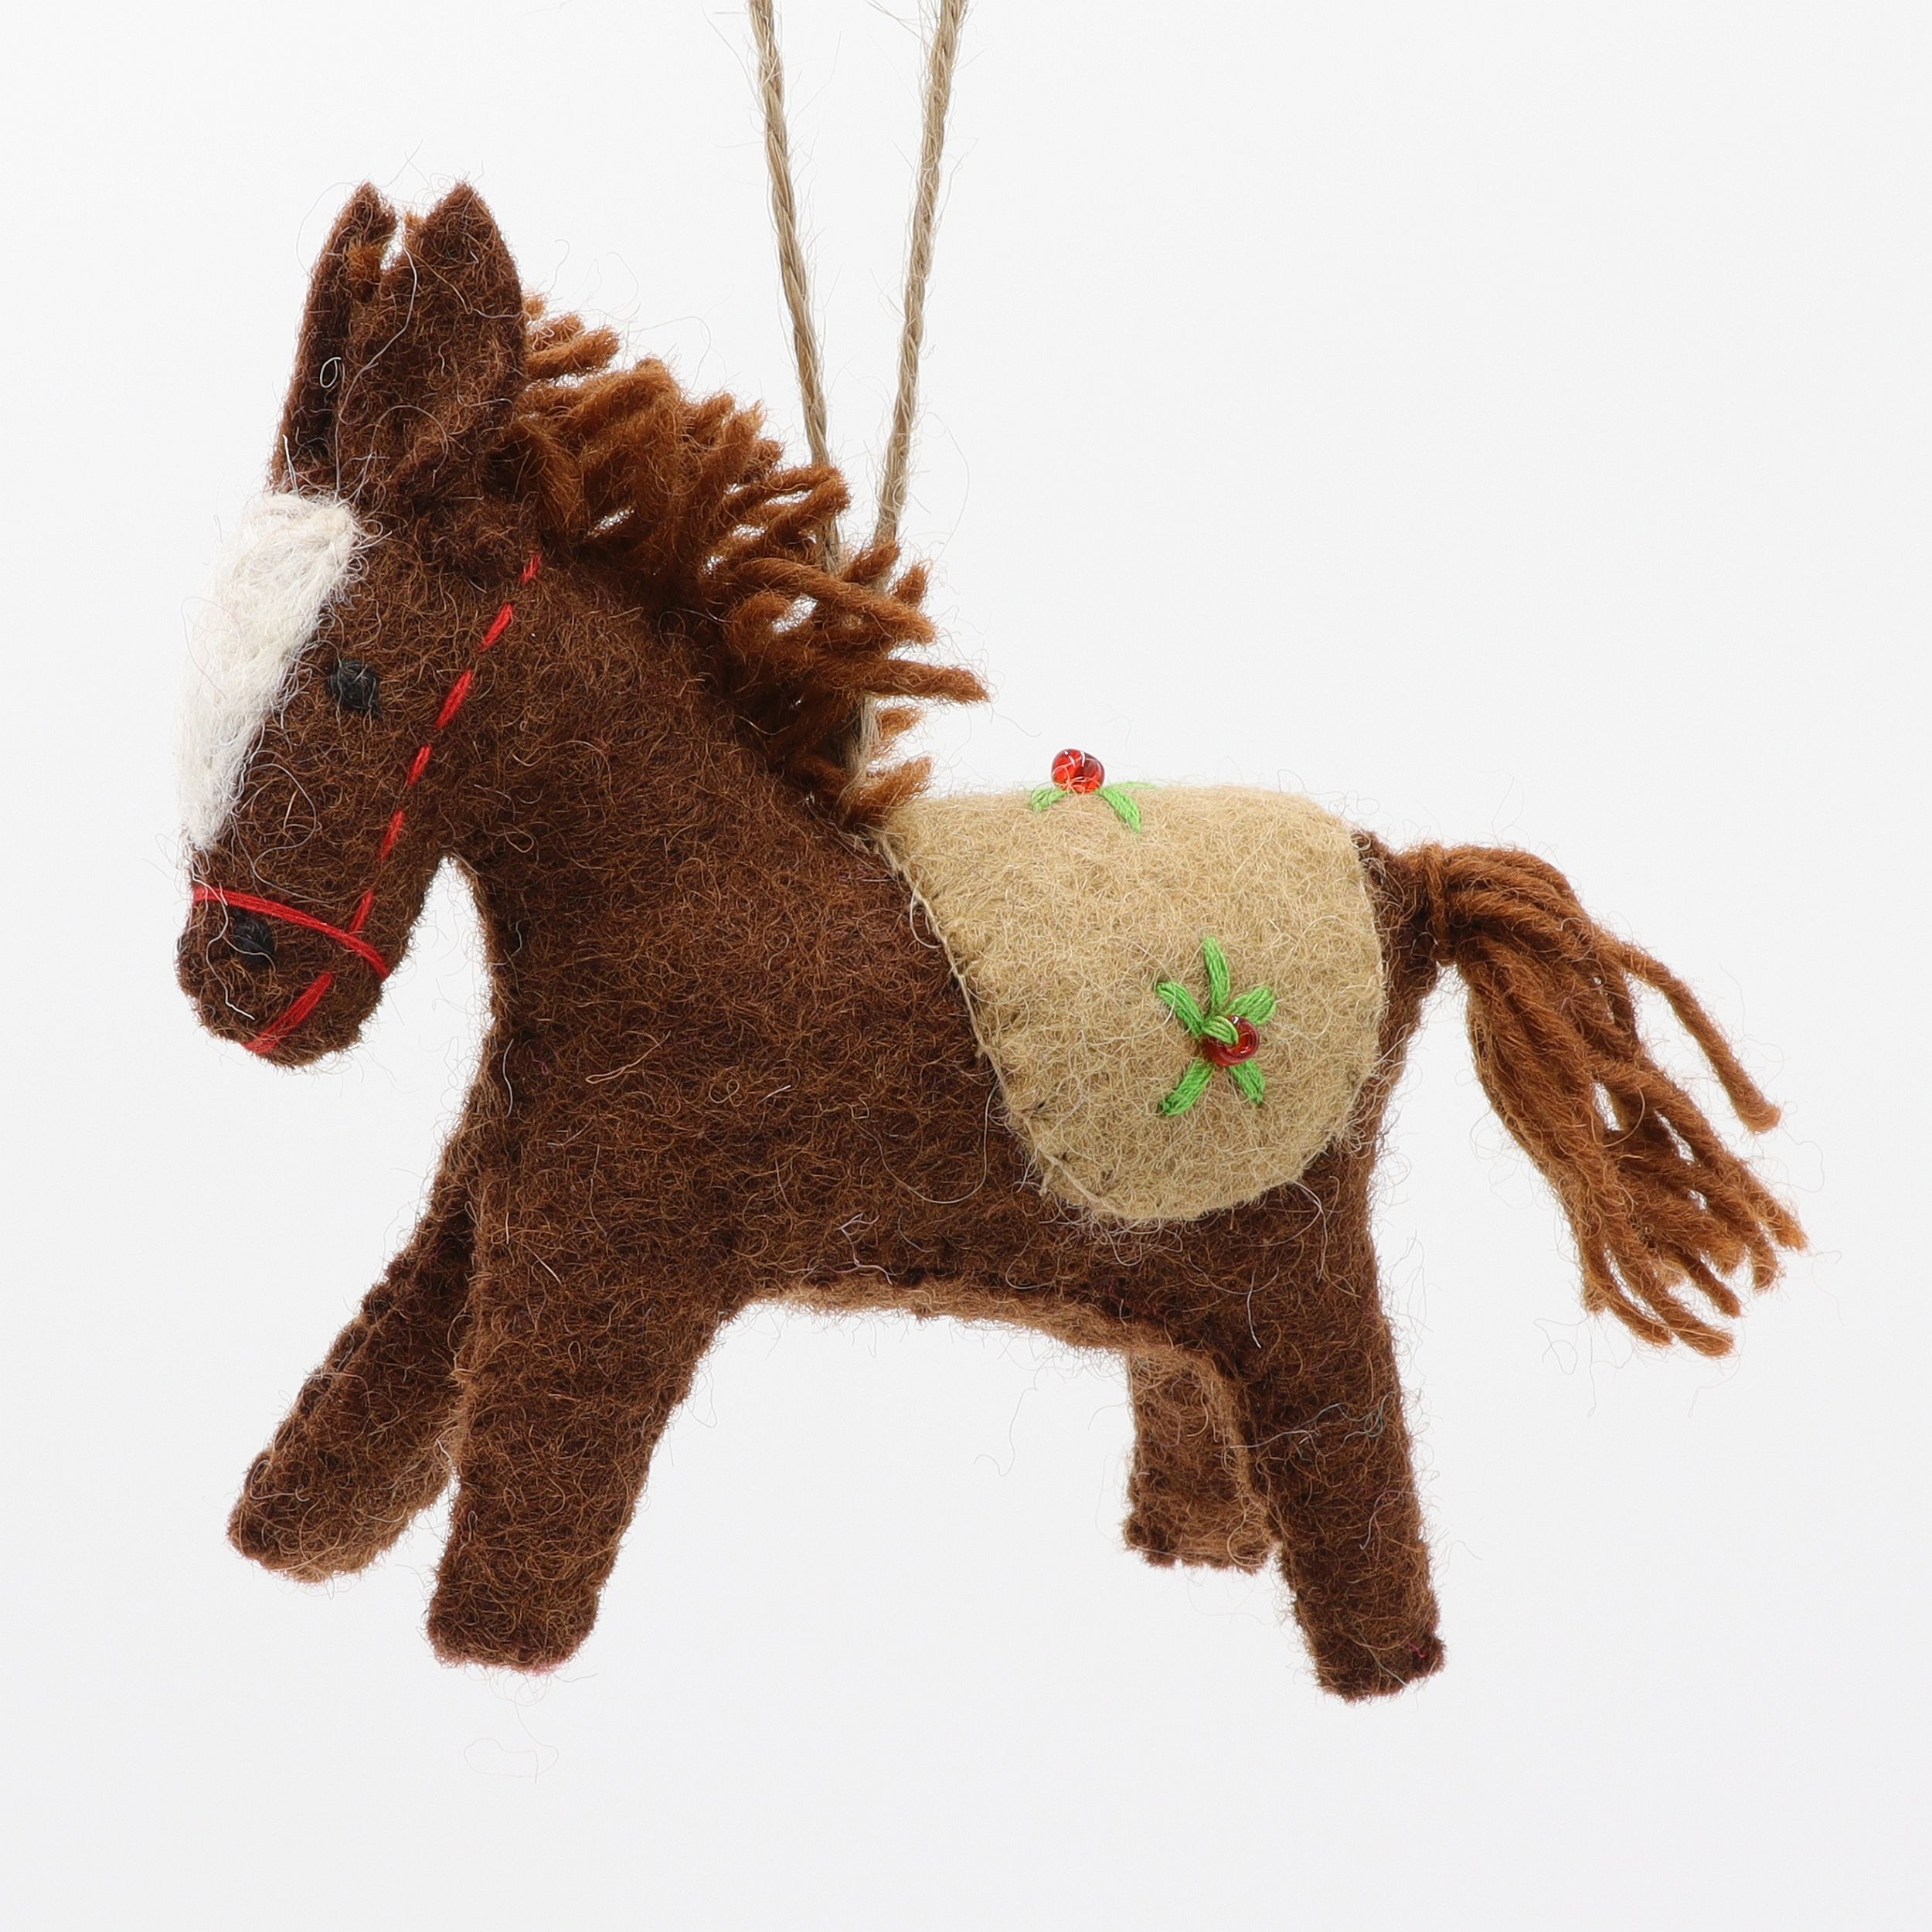 Pferdchen mit Sattel - Anhänger aus Filz - Geschenkanhänger oder Baumschmuck - echte Handarbeit und fair gehandelt